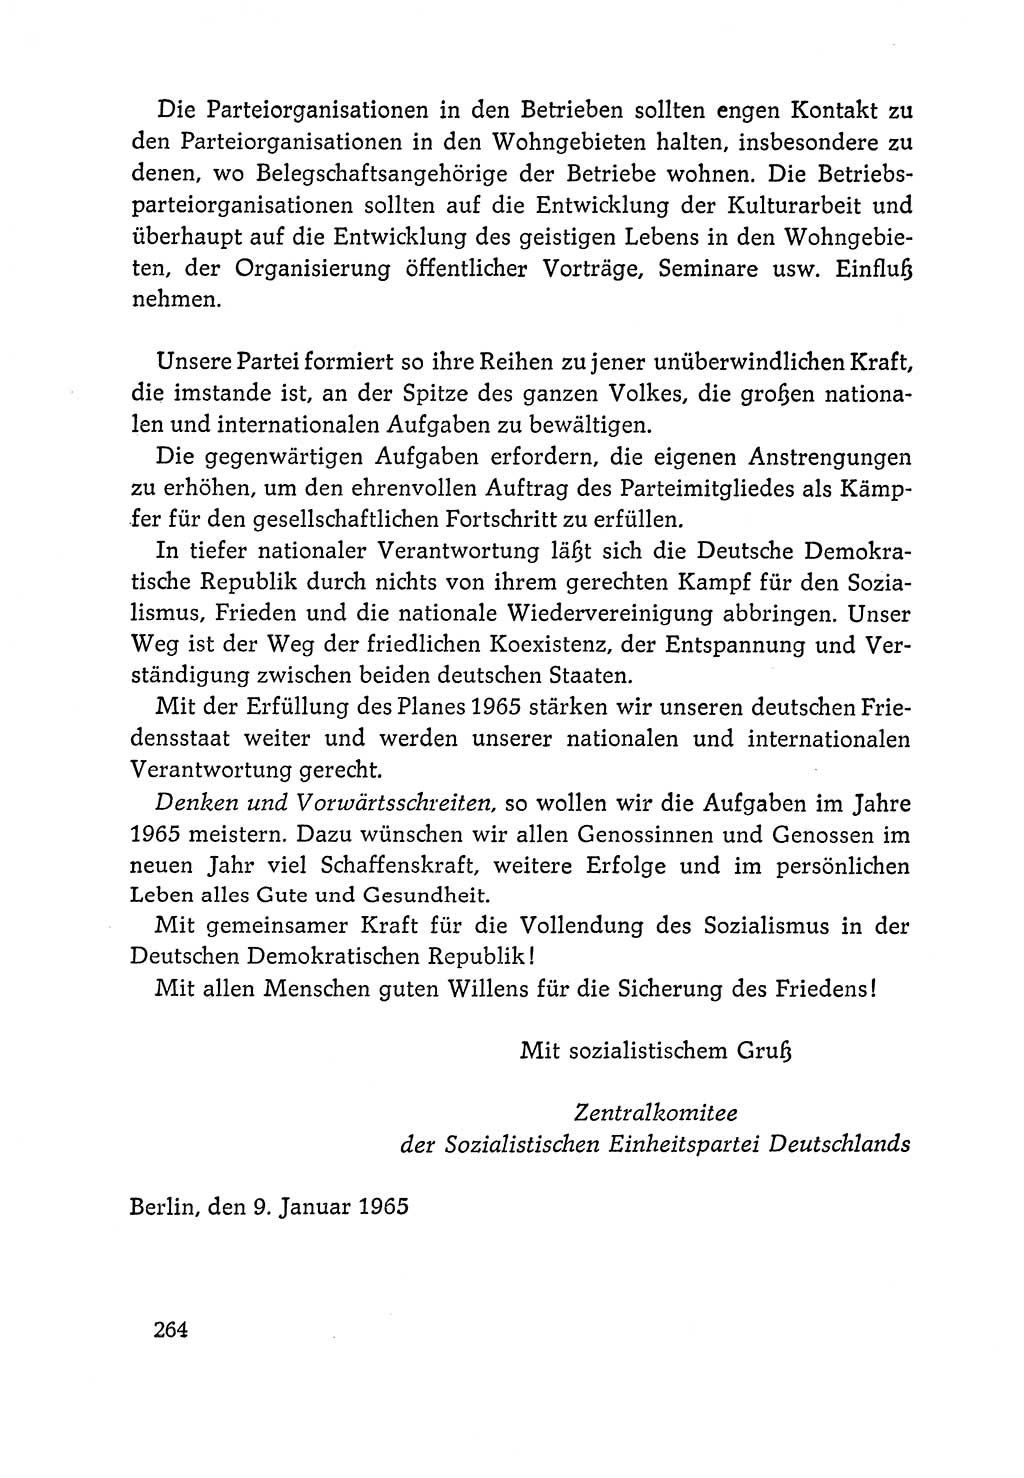 Dokumente der Sozialistischen Einheitspartei Deutschlands (SED) [Deutsche Demokratische Republik (DDR)] 1964-1965, Seite 264 (Dok. SED DDR 1964-1965, S. 264)